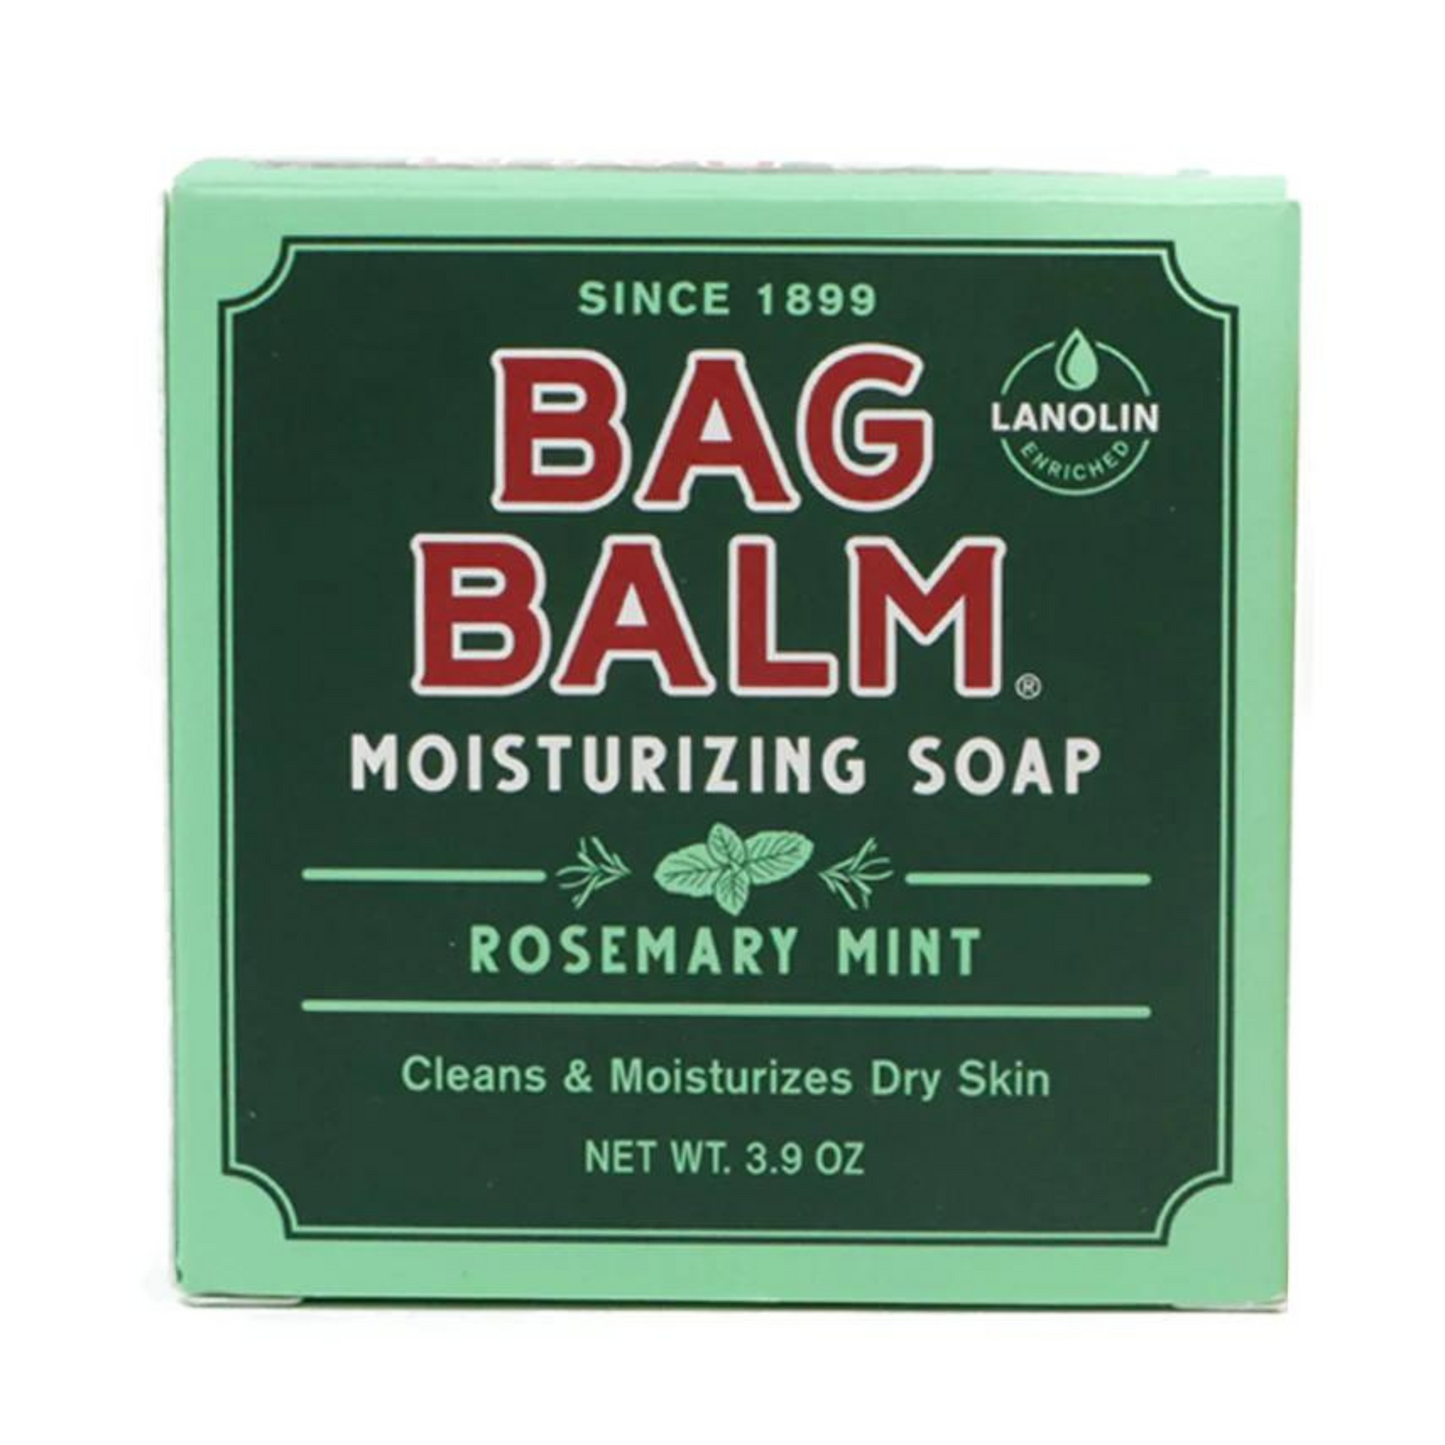 Primary Image of Bag Balm Moisturizing Soap (3.9 oz)